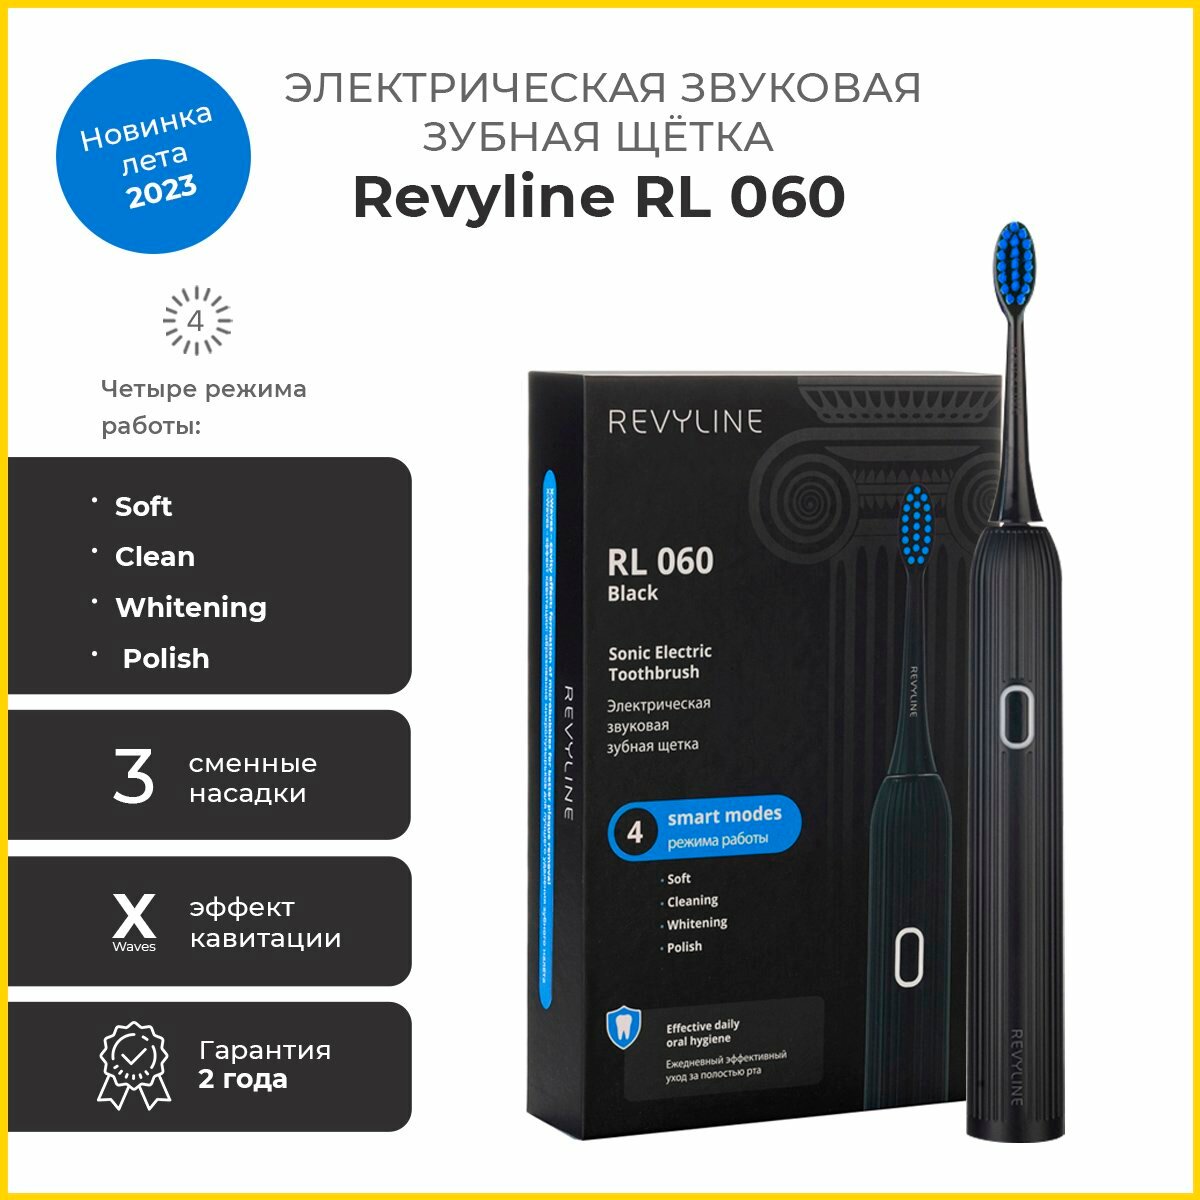   Revyline RL 060 Black 7490